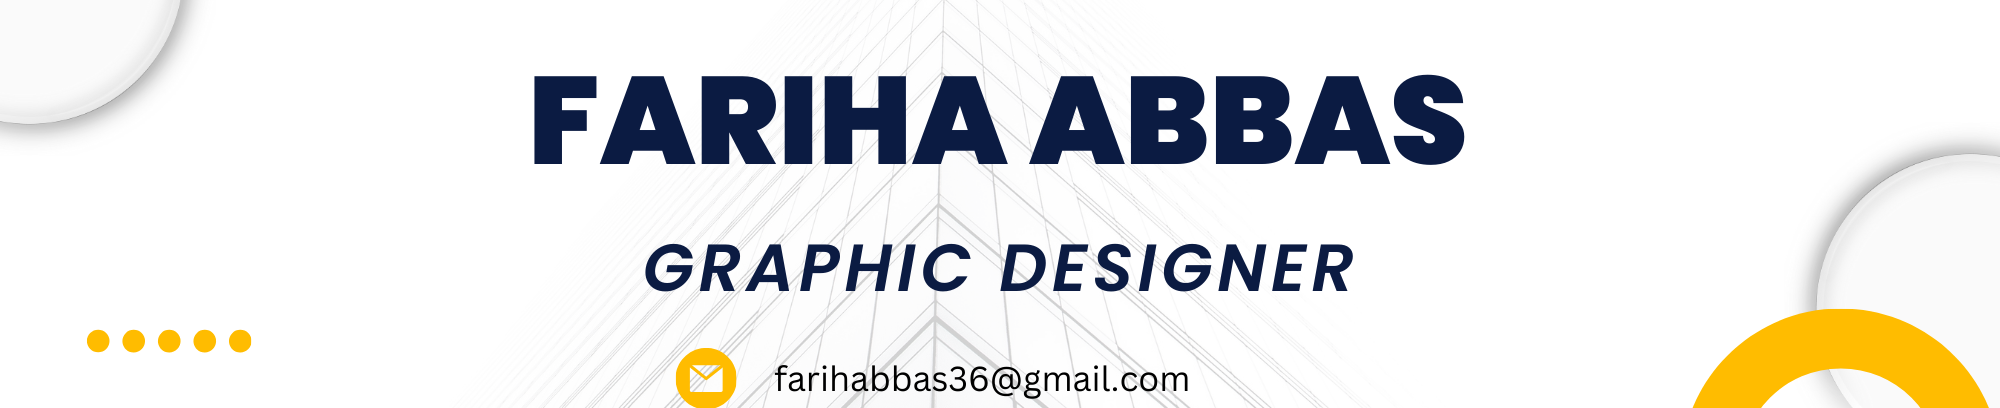 Fariha Abbas's profile banner